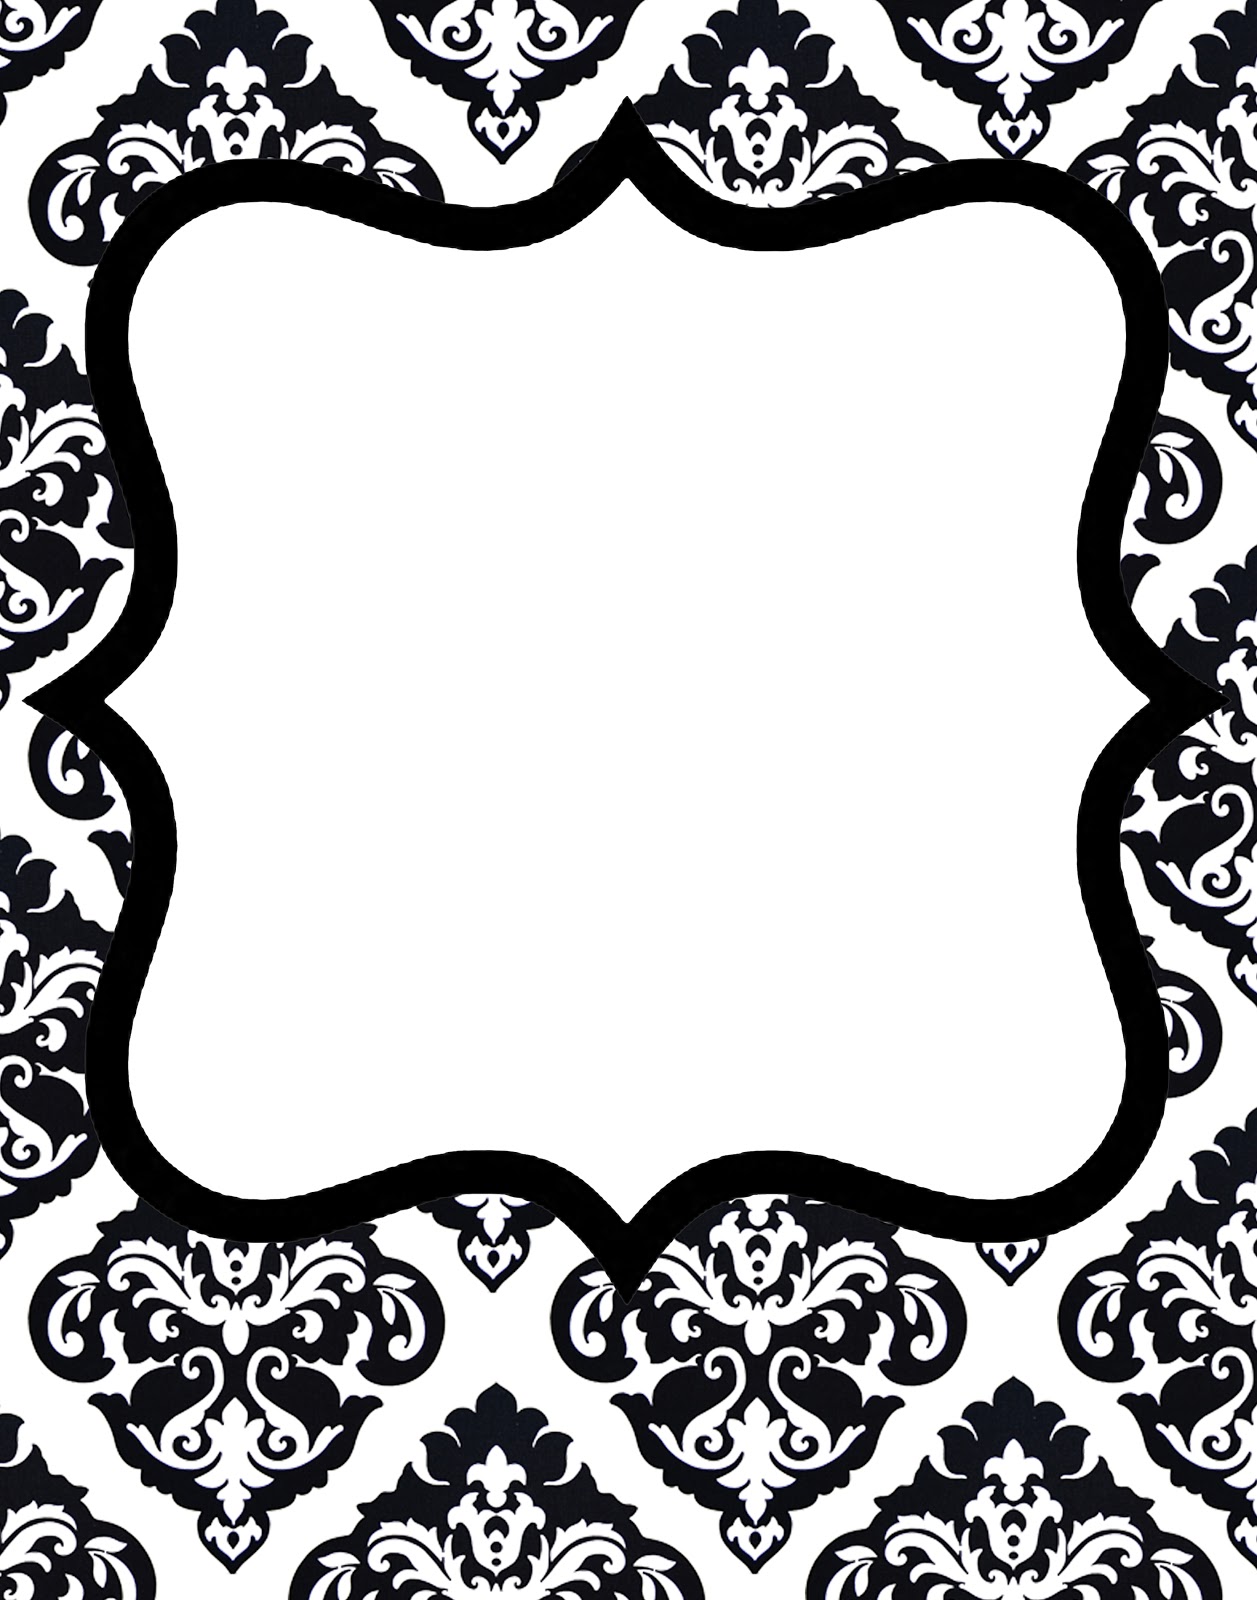 Doodle craft freebie 1 gorgeous damask invitations | Black ...